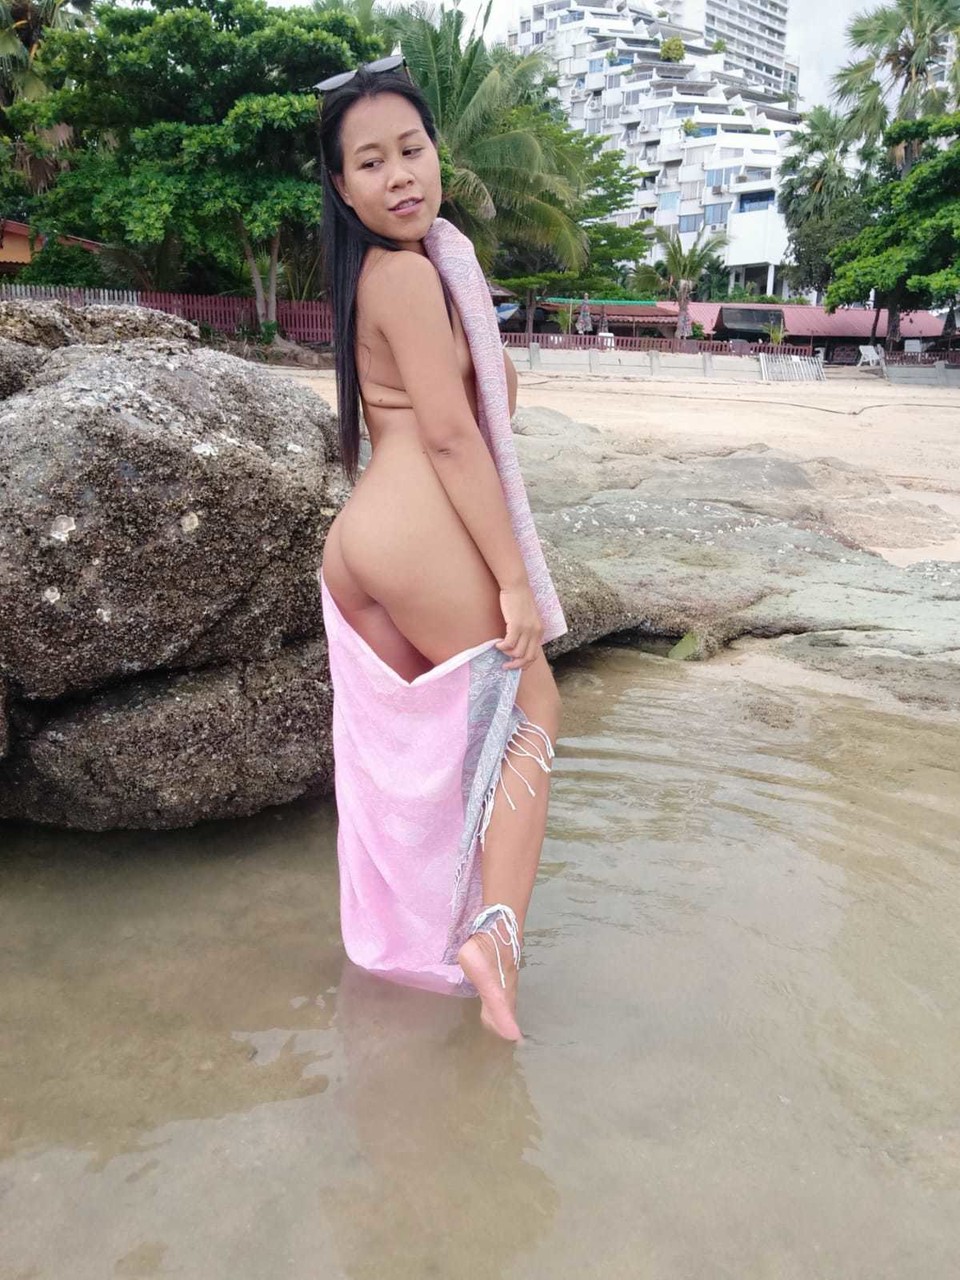 Gorgeous Asian amateur Kiki Asia shows her hot ass in a bikini at the beach foto porno #425545193 | TukTuk Thailand Pics, Kiki Asia, Thai, porno mobile